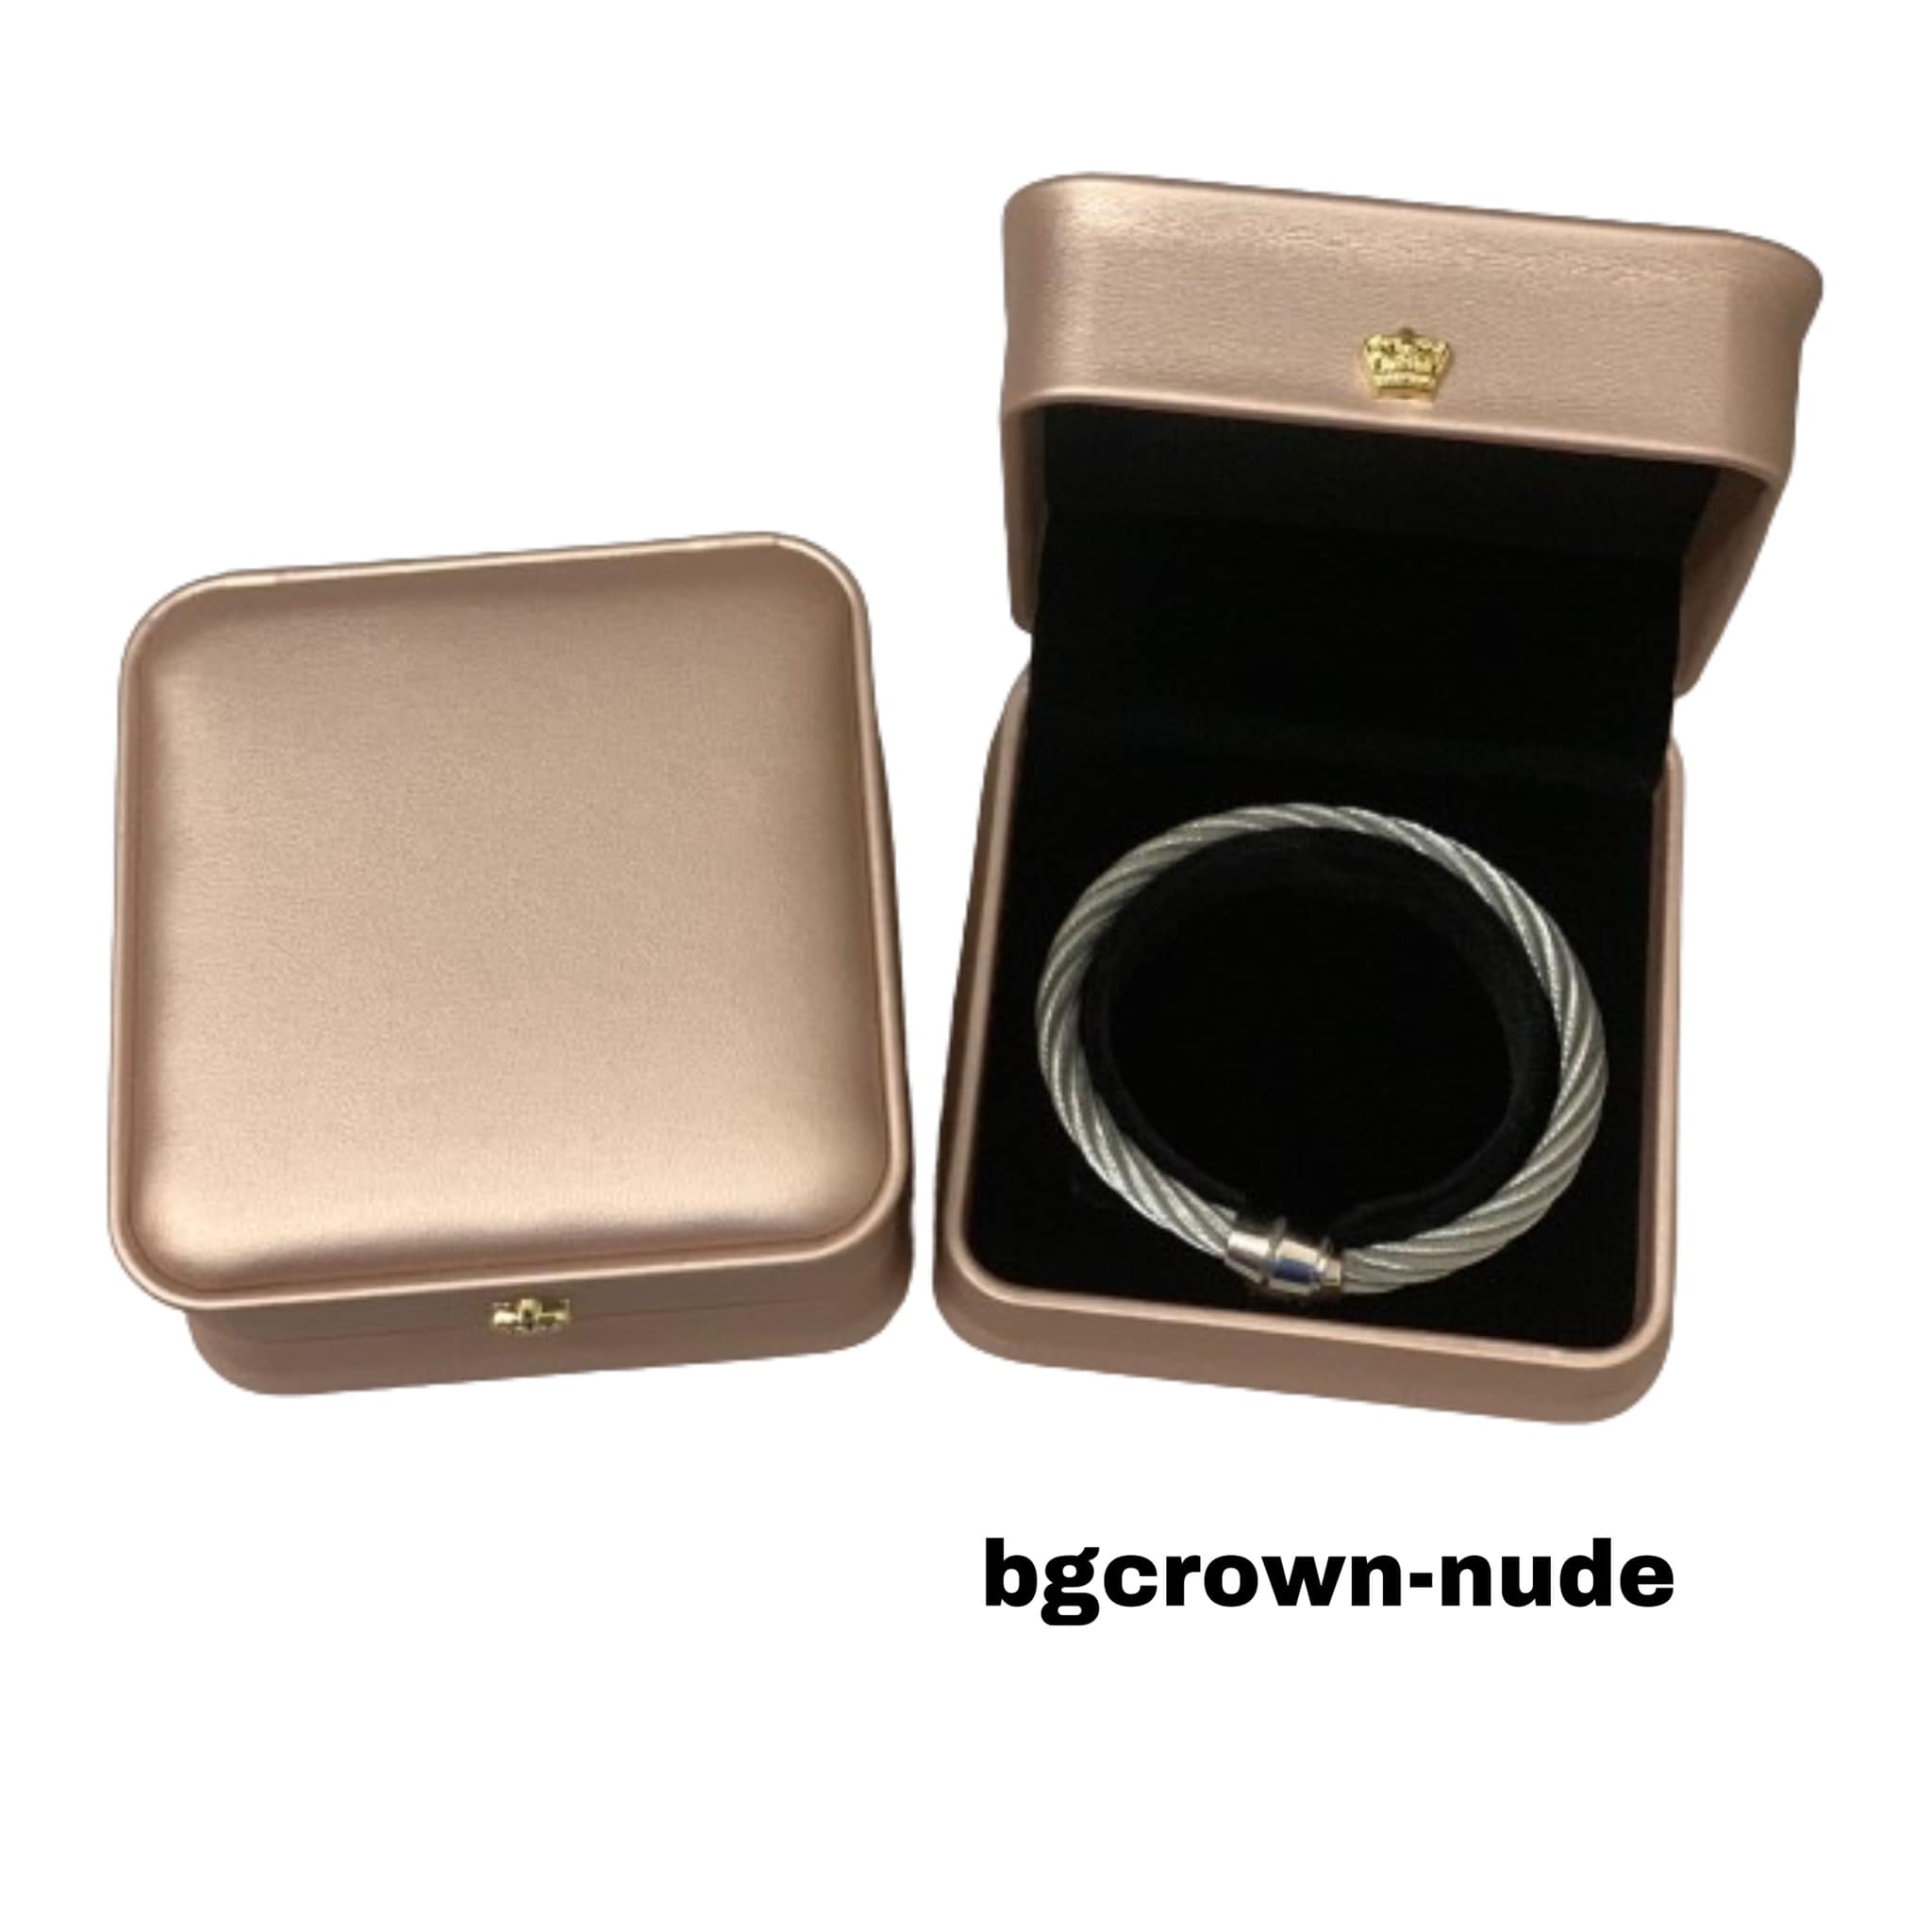 bgcrown-nude